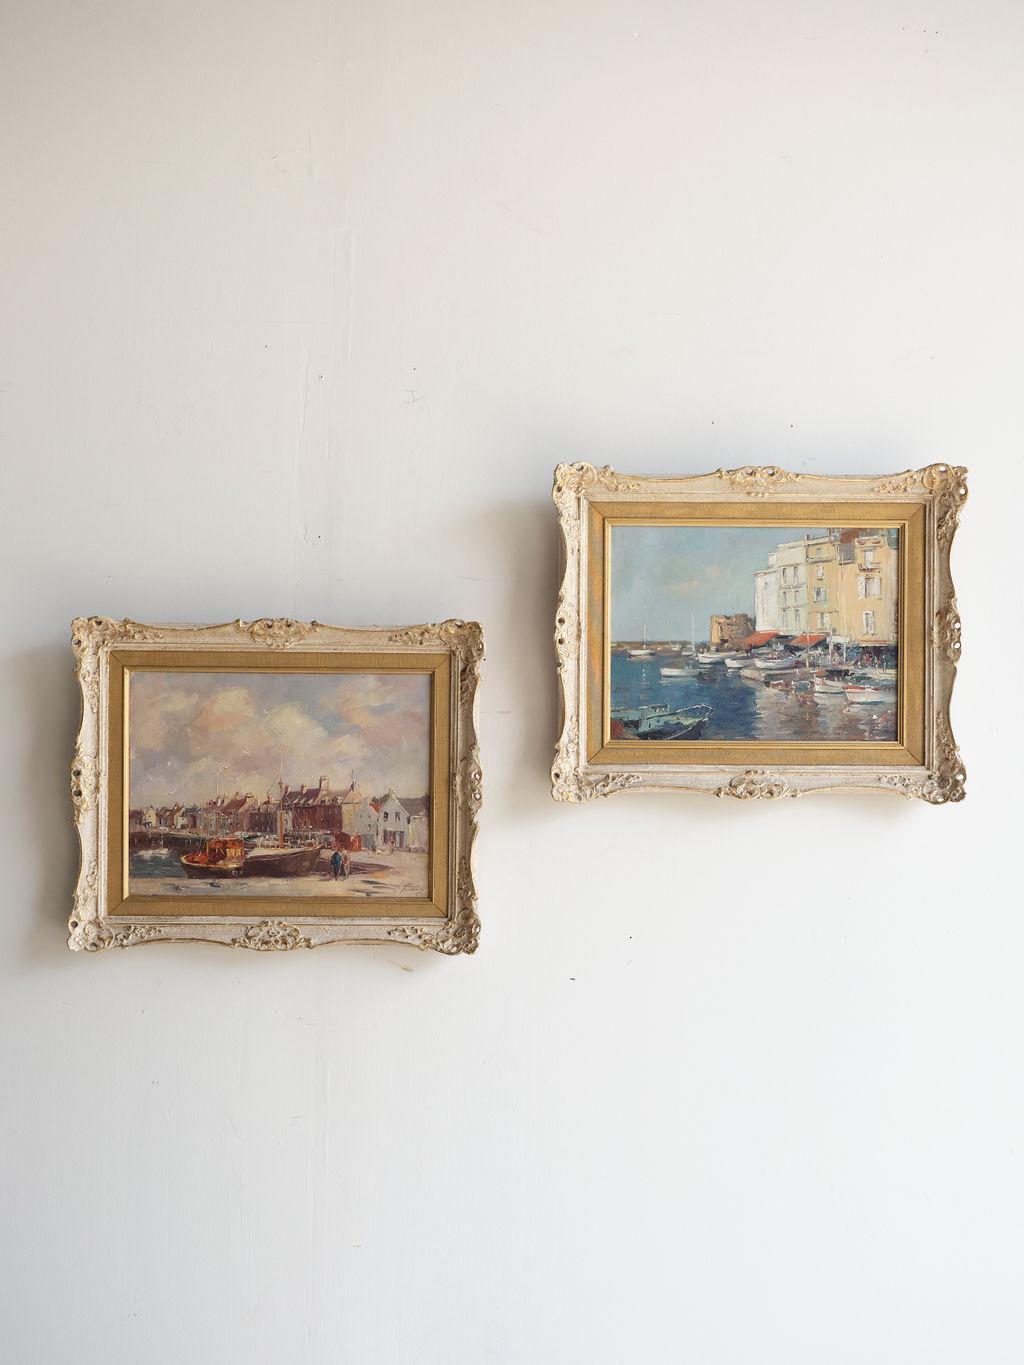 Cette paire de peintures à l'huile de Phyllis Morgans représente les ports de Saint-Tropez et d'Anstruther au milieu du XXe siècle. Les couleurs dominantes sont les bleus et les tans. Les tableaux sont dans leur cadre d'origine, d'une belle couleur